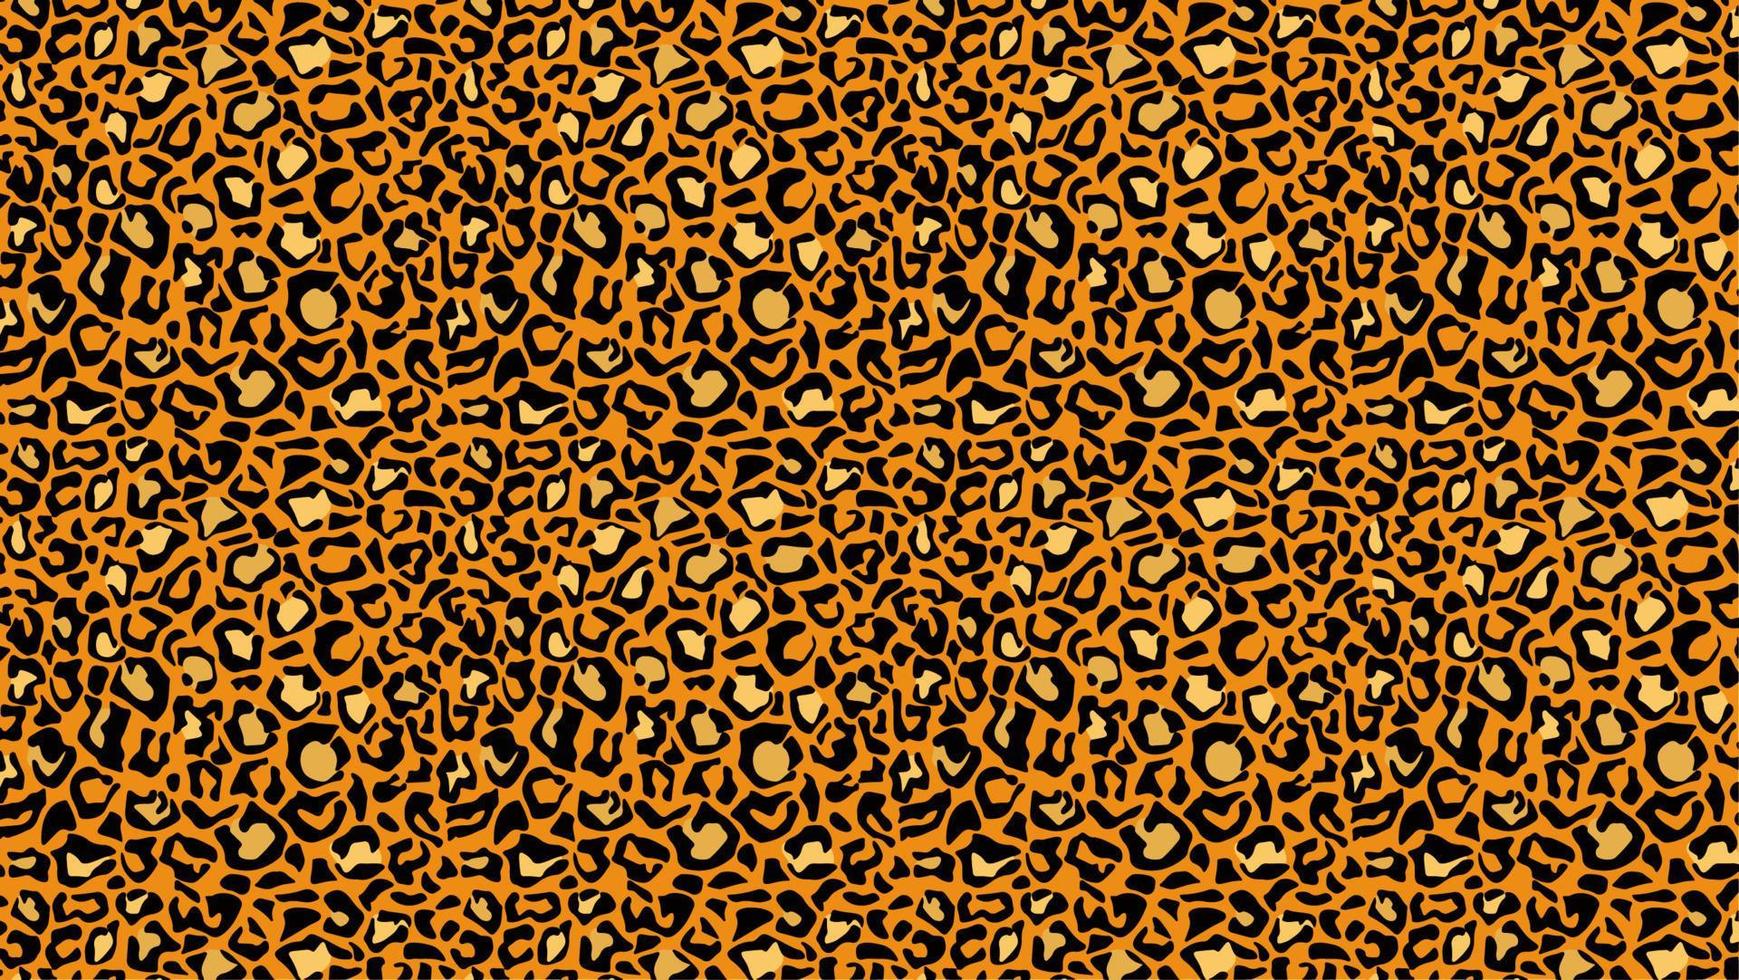 Leopardenleder Maßwerk Hintergrund. gelbe Pantherflecken mit schwarzen Jaguar-Umrissen in orangefarbenem Geparden-Vektorfarbschema. vektor